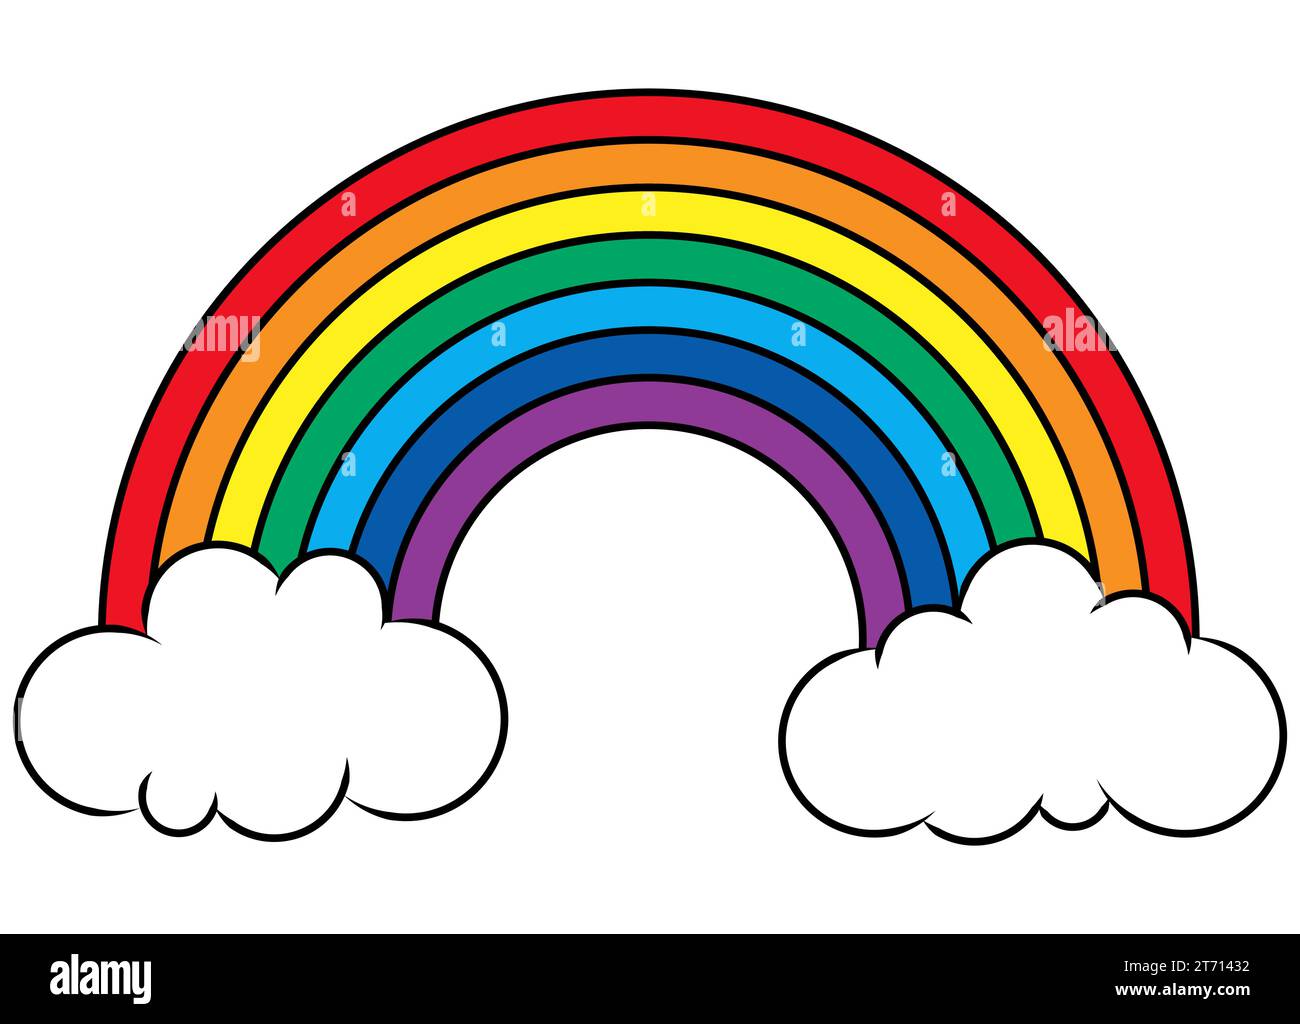 illustrazione vettoriale eps che mostra un meraviglioso arcobaleno colorato con nuvole bianche alle estremità Illustrazione Vettoriale